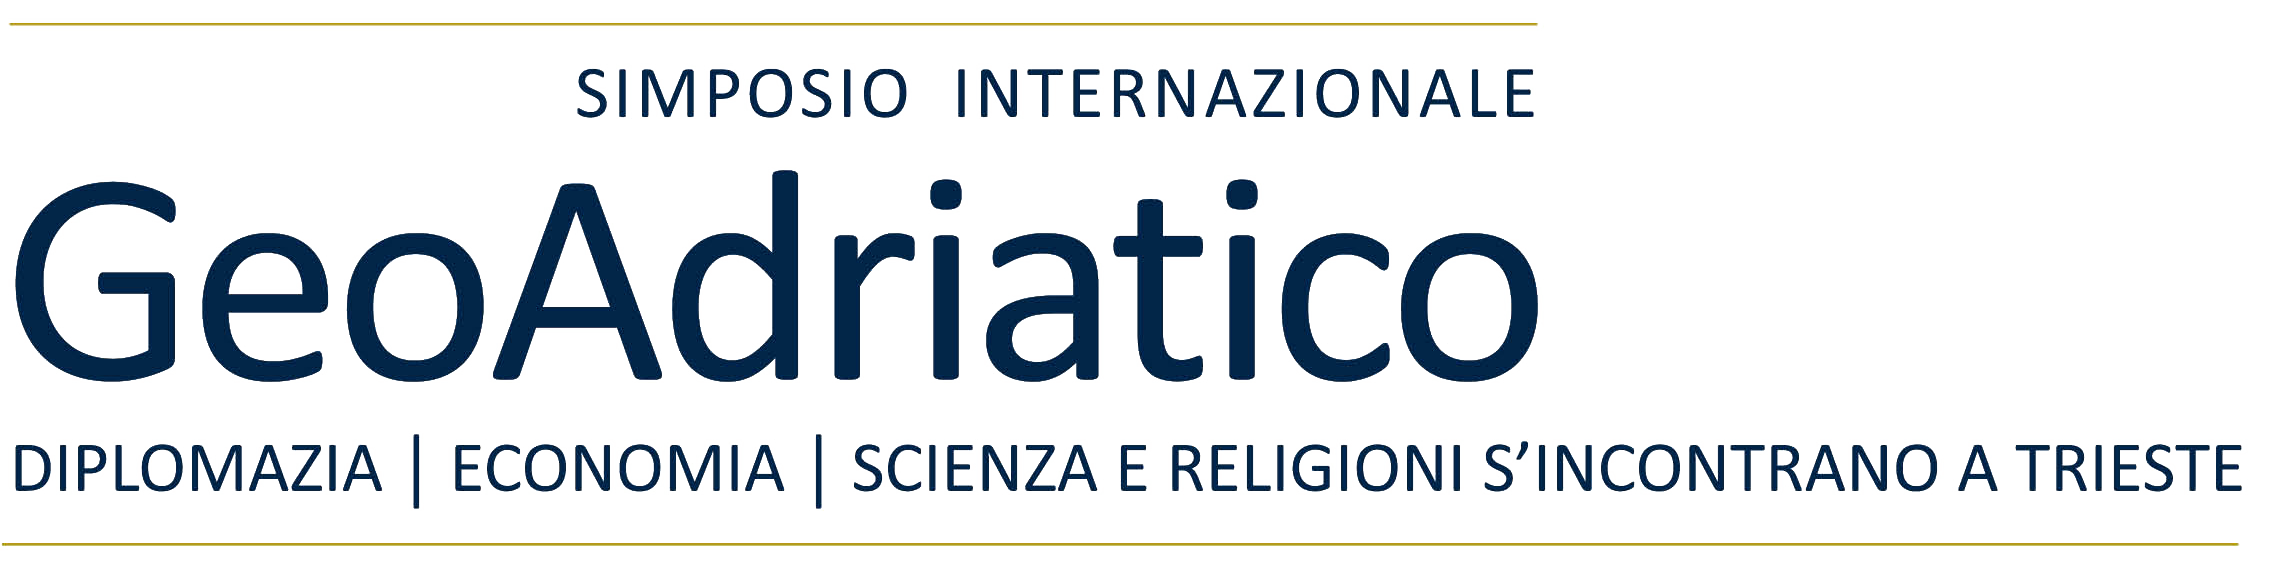 Logo GeoAdriatico Simposio internazionale